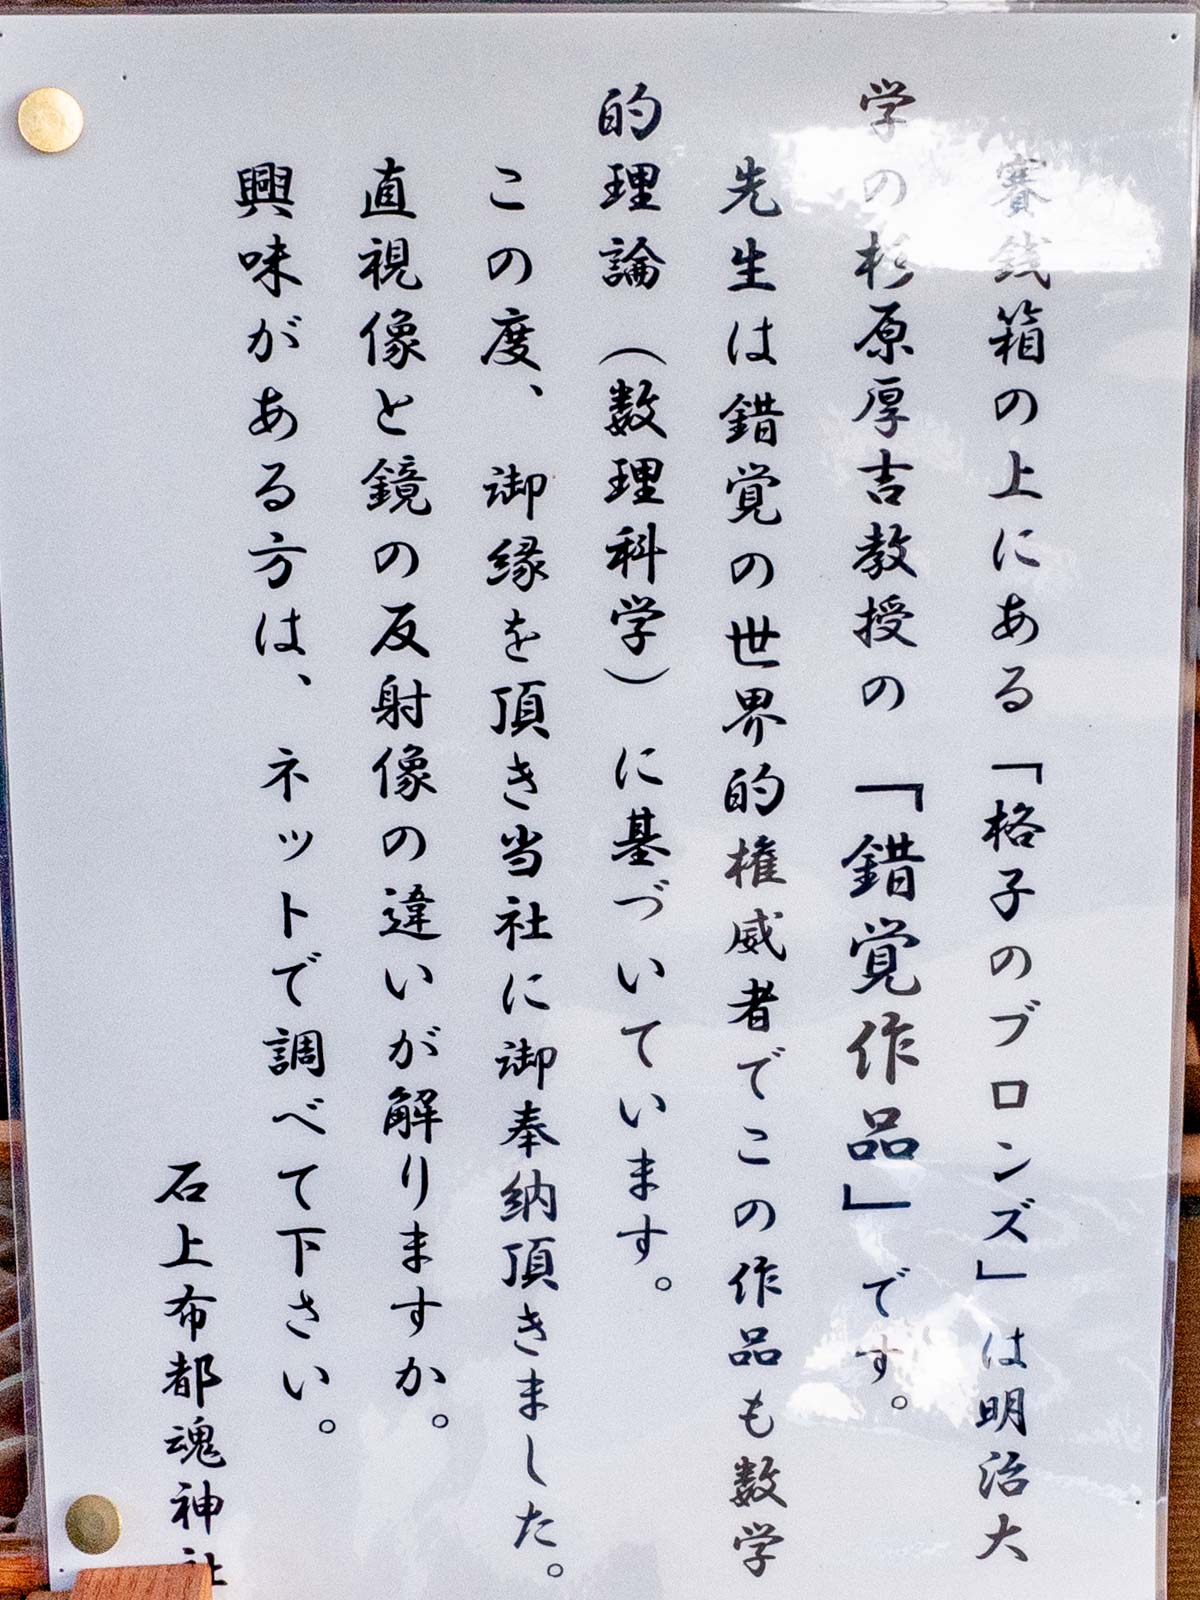 石上布都魂神社：杉原厚吉教授の錯覚作品「格子のブロンズ」の賽銭箱の解説